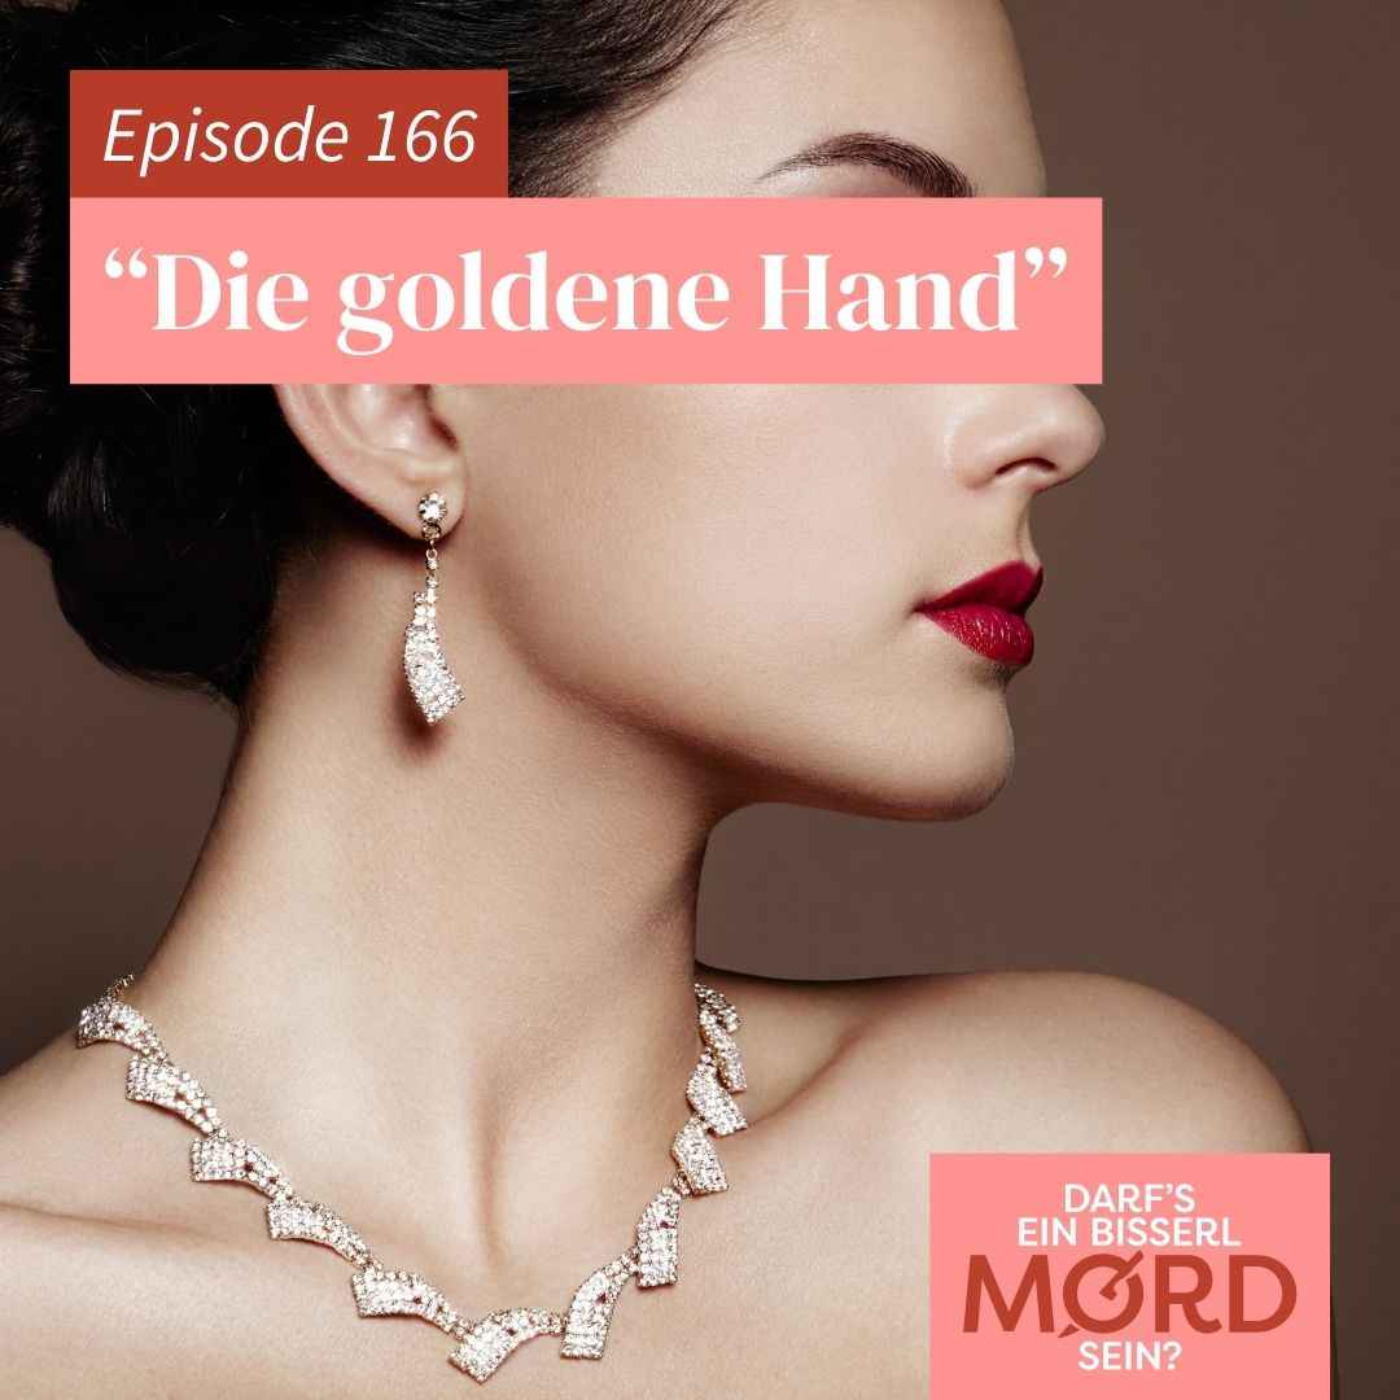 Episode 166: "Die goldene Hand"